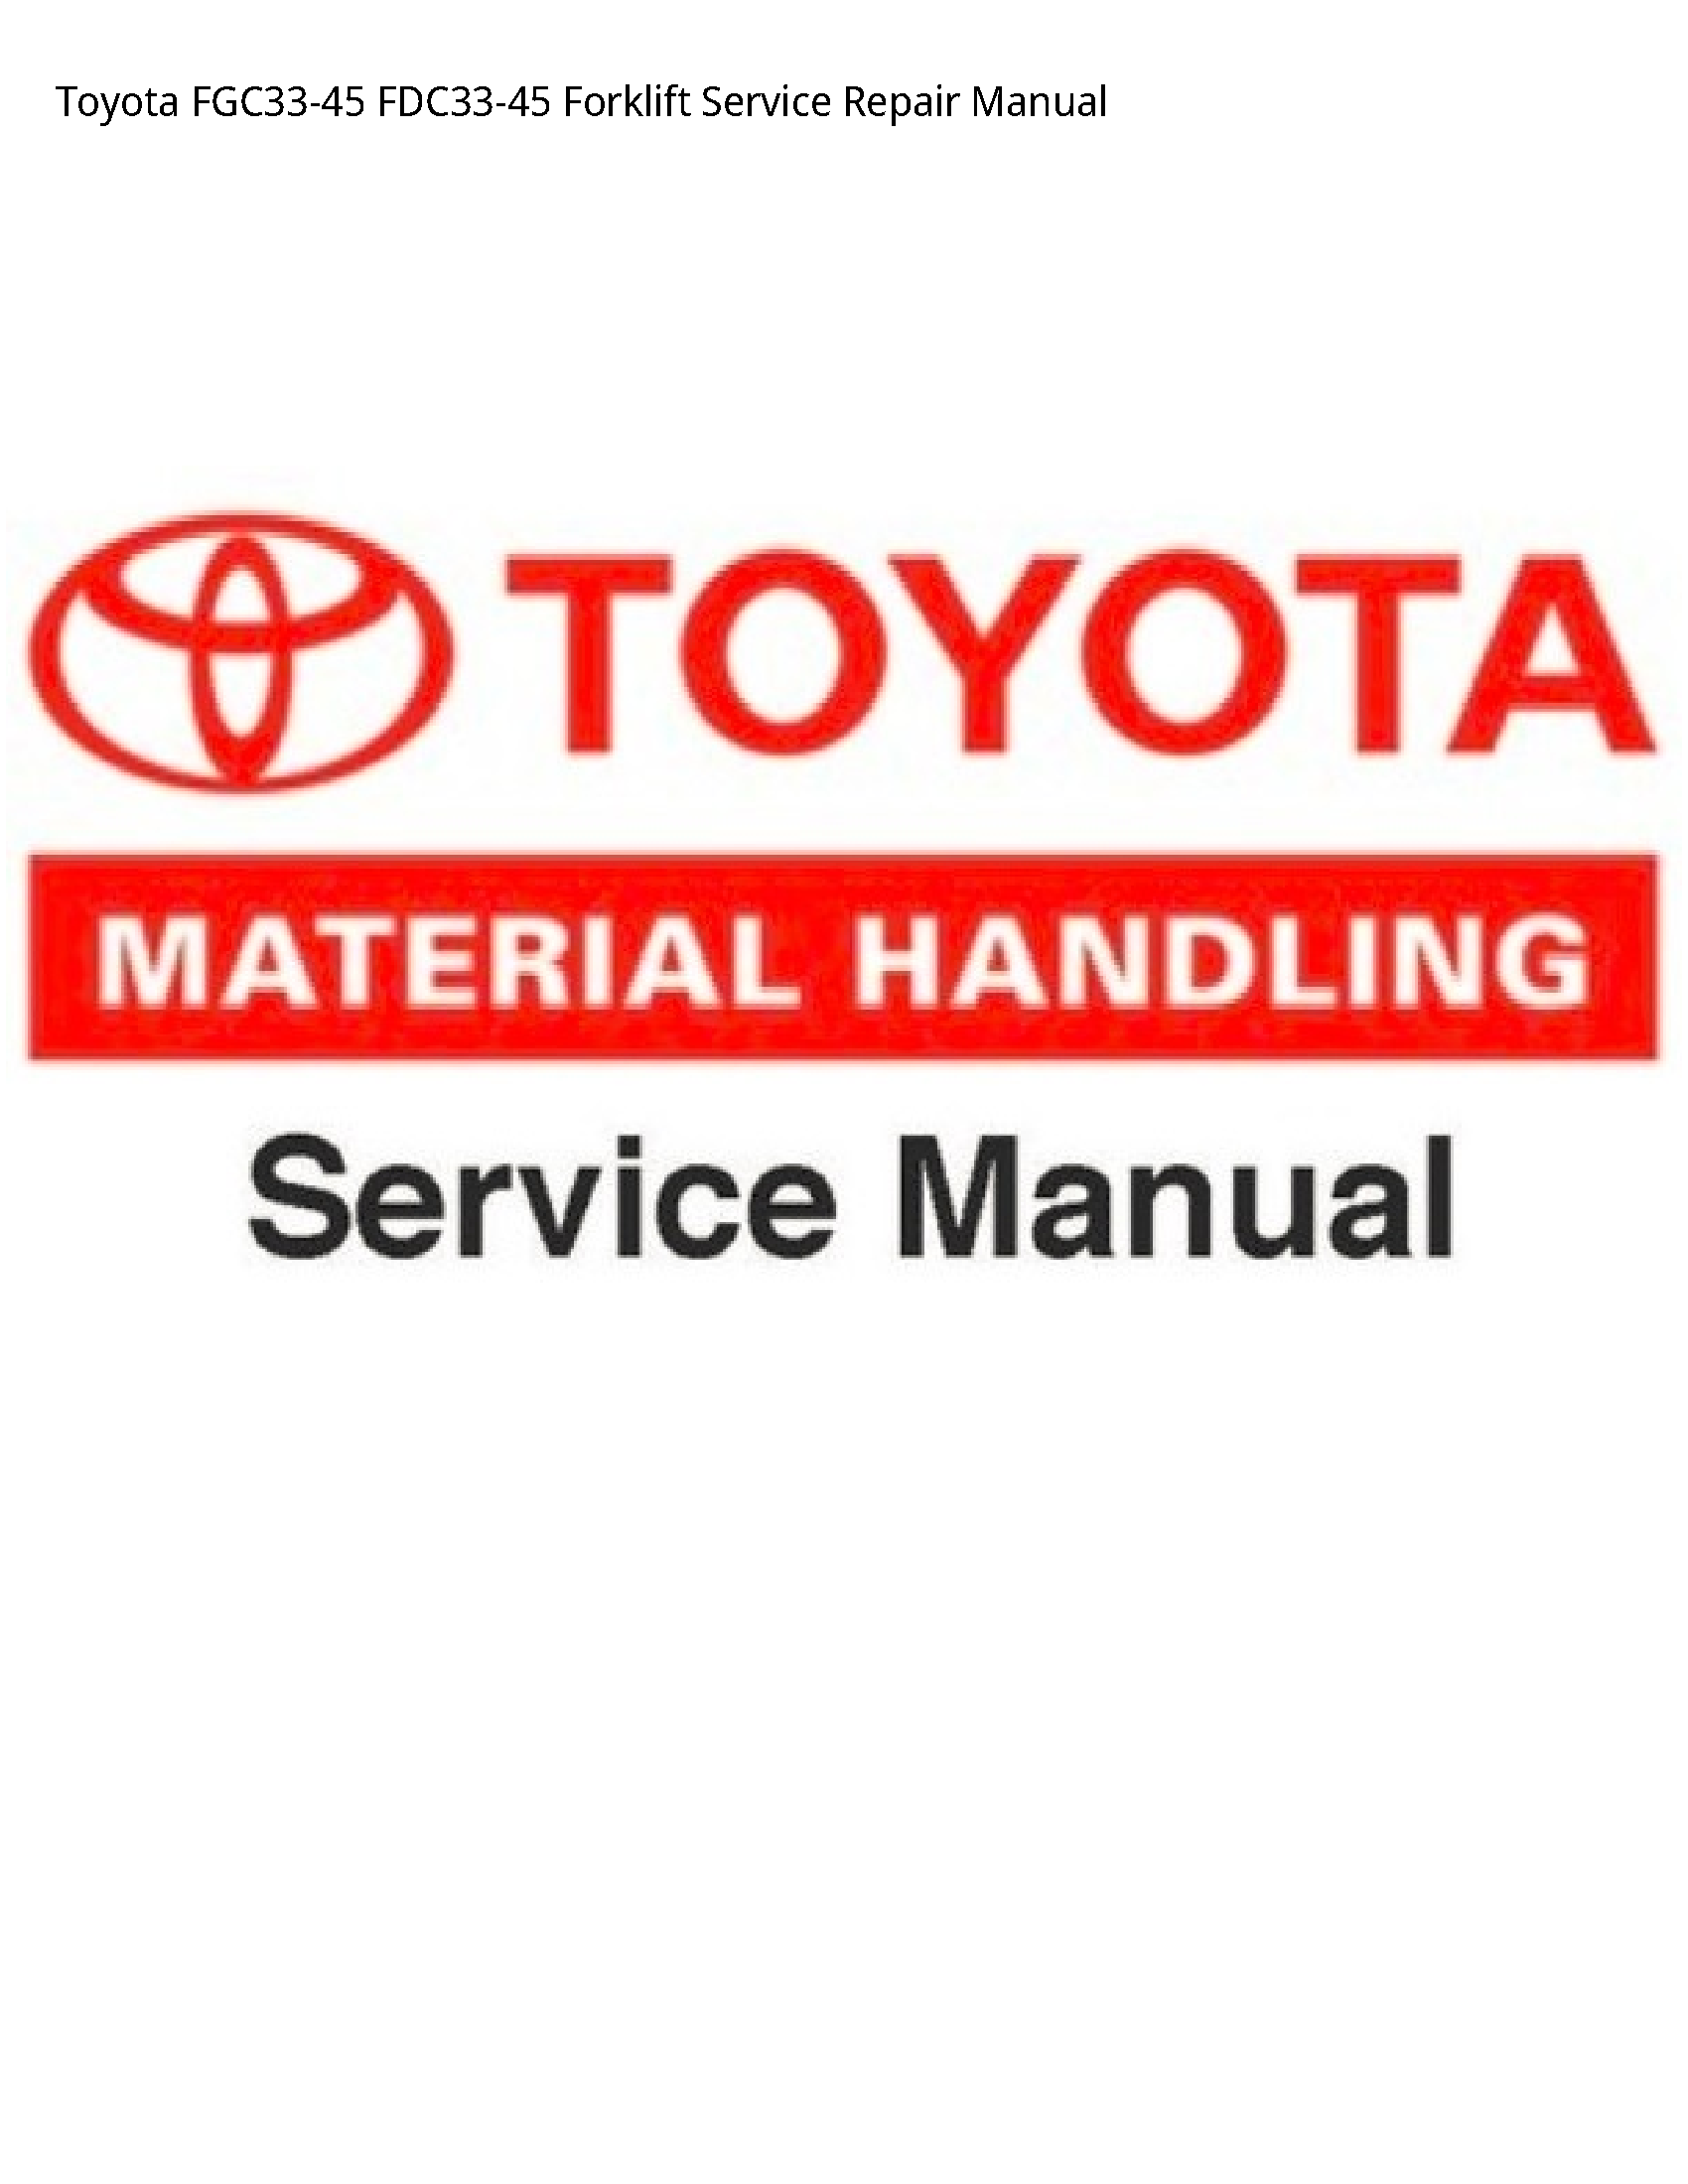 Toyota FGC33-45 Forklift manual